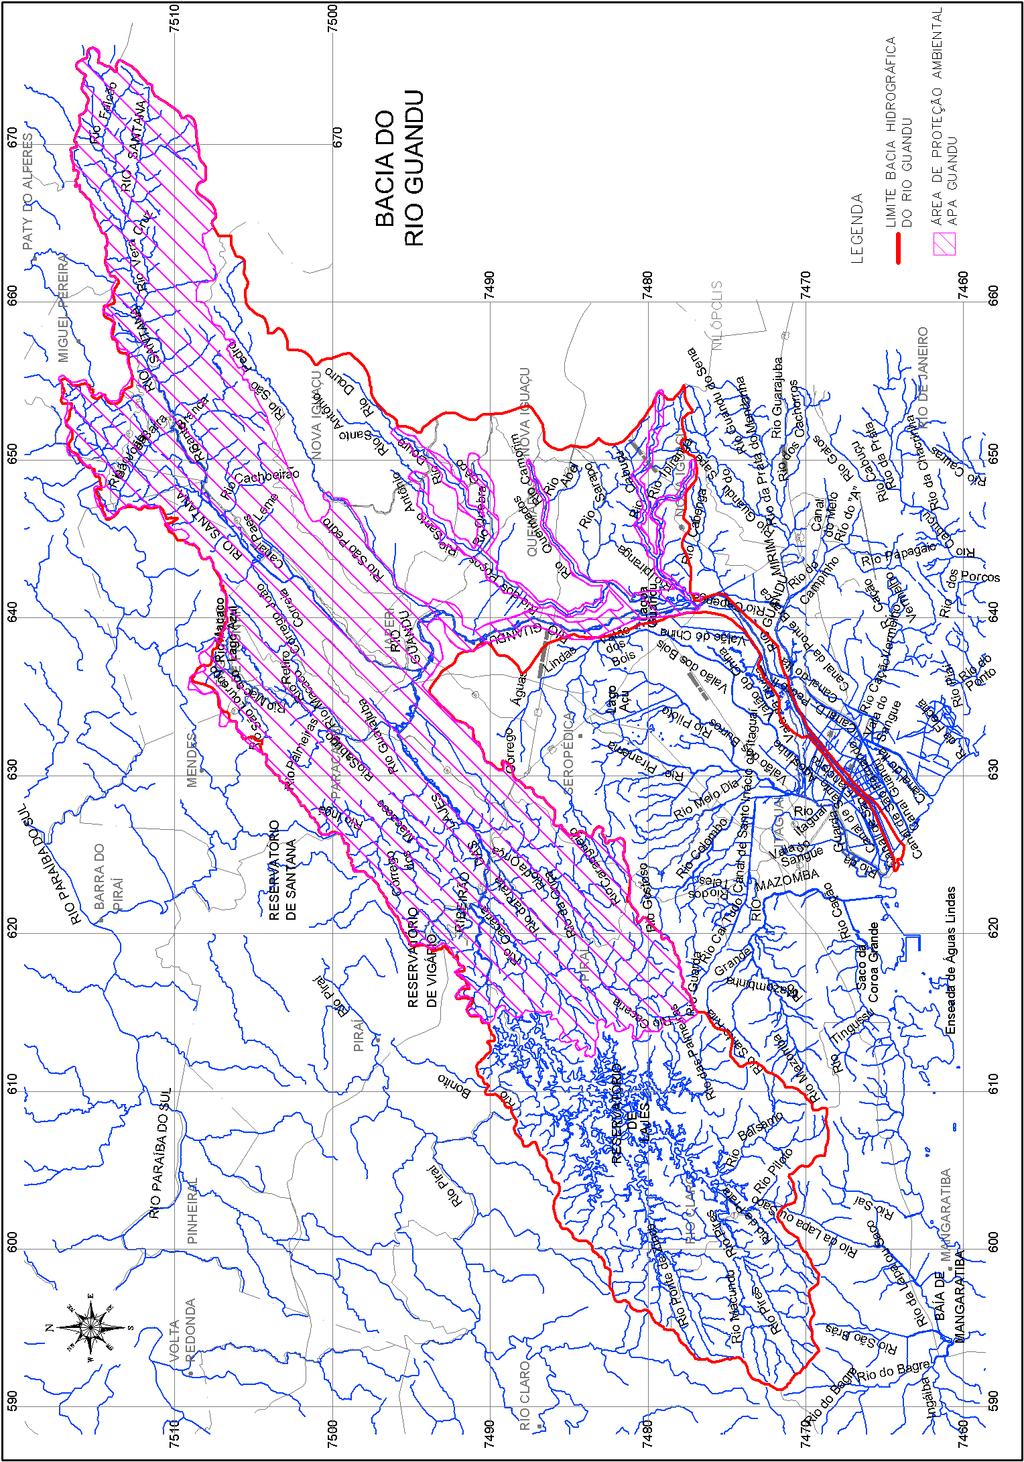 O mapa da Figura 5 apresenta a bacia hidrográfica em estudo e a APA